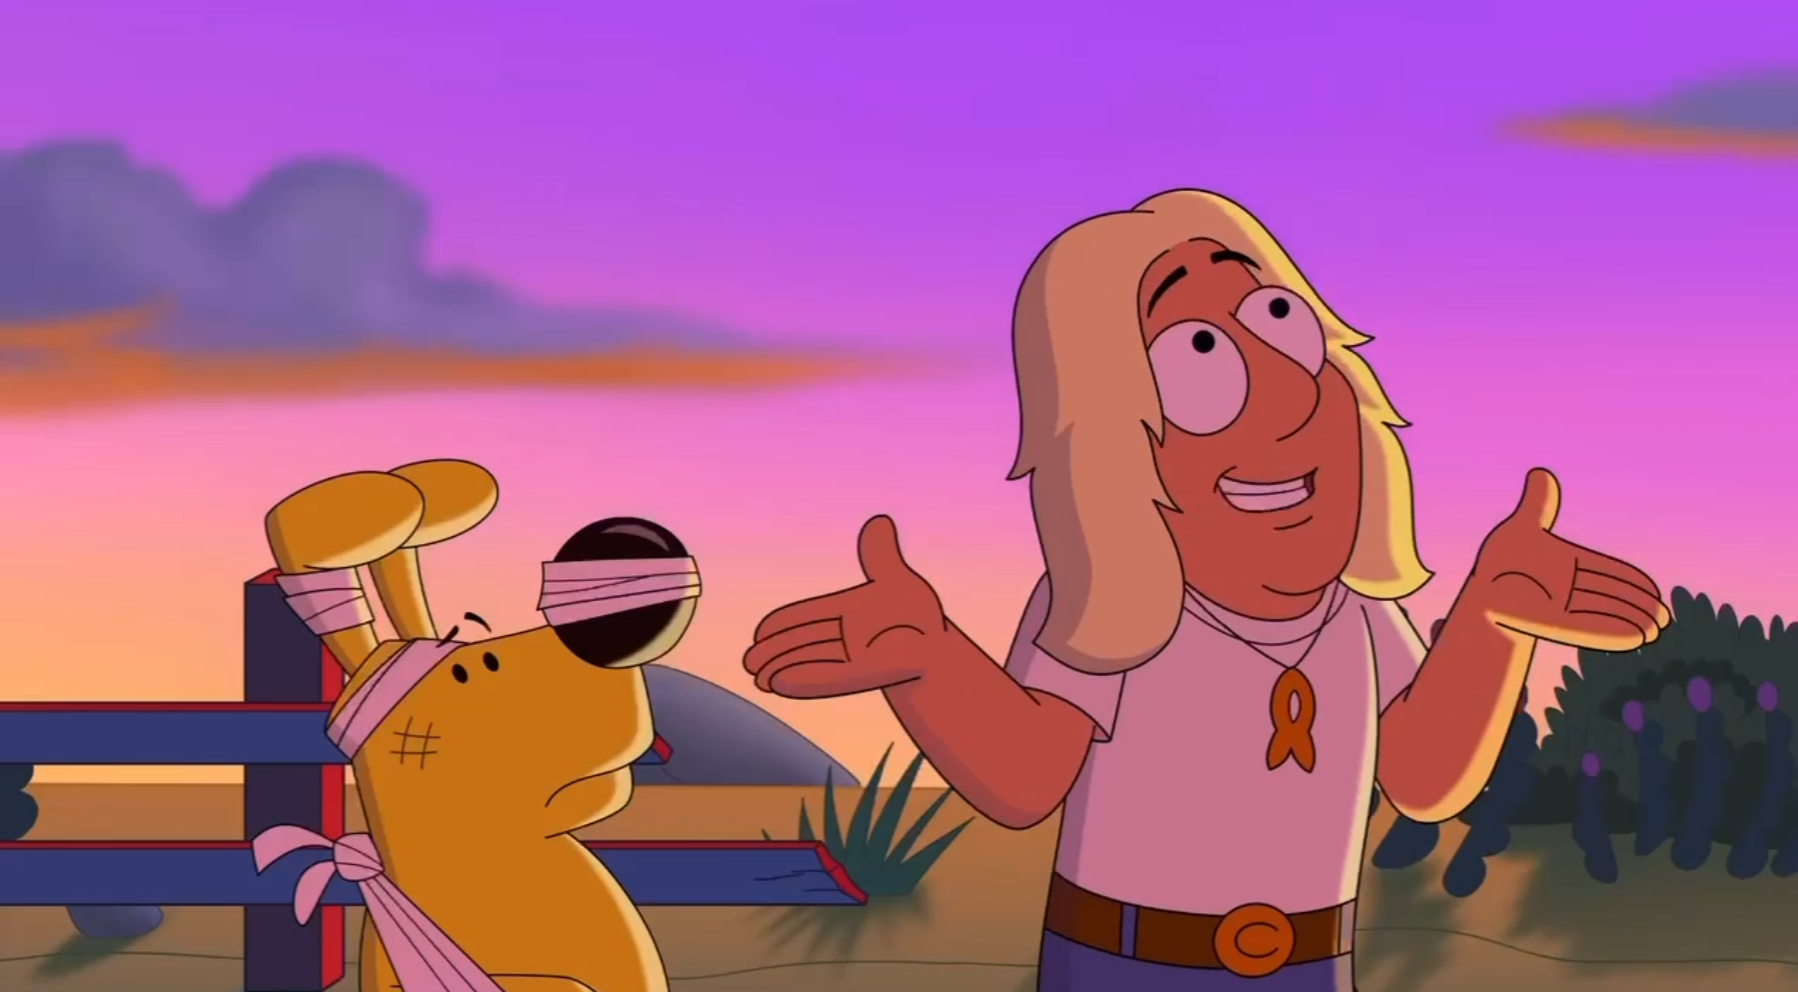 Les deux personnages du dessin animé, un chien jaune et un surfeur, sont debout côte à côte pendant un coucher de soleil. Le chien jaune est couvert de pansements.